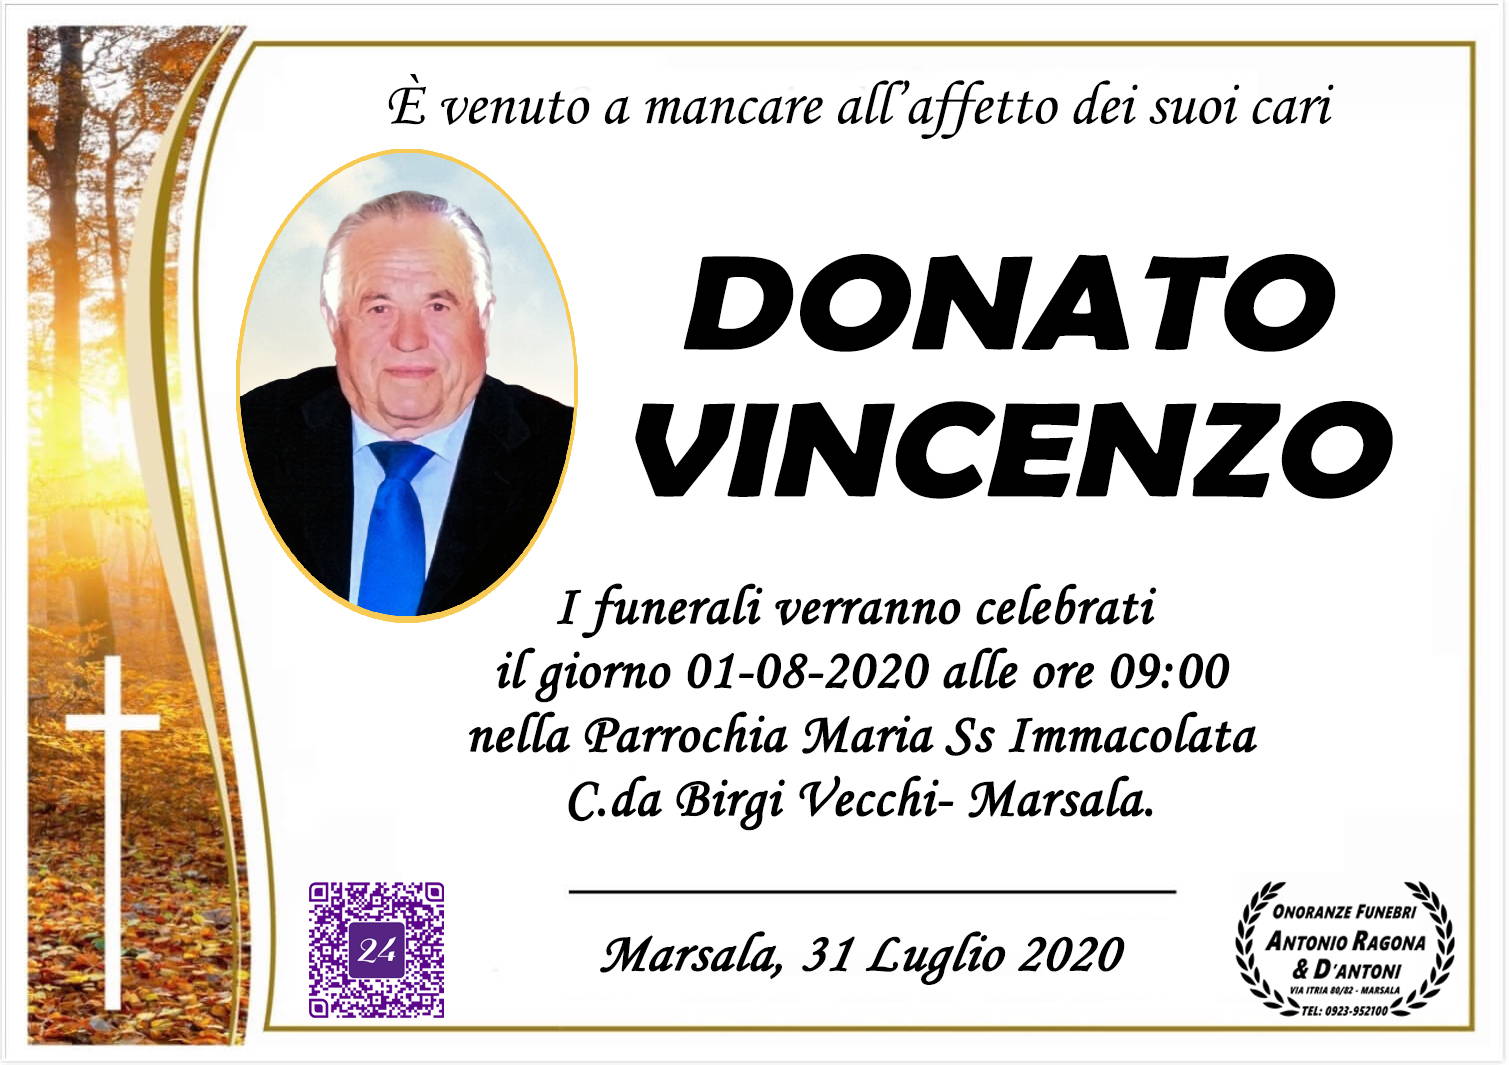 Vincenzo Donato